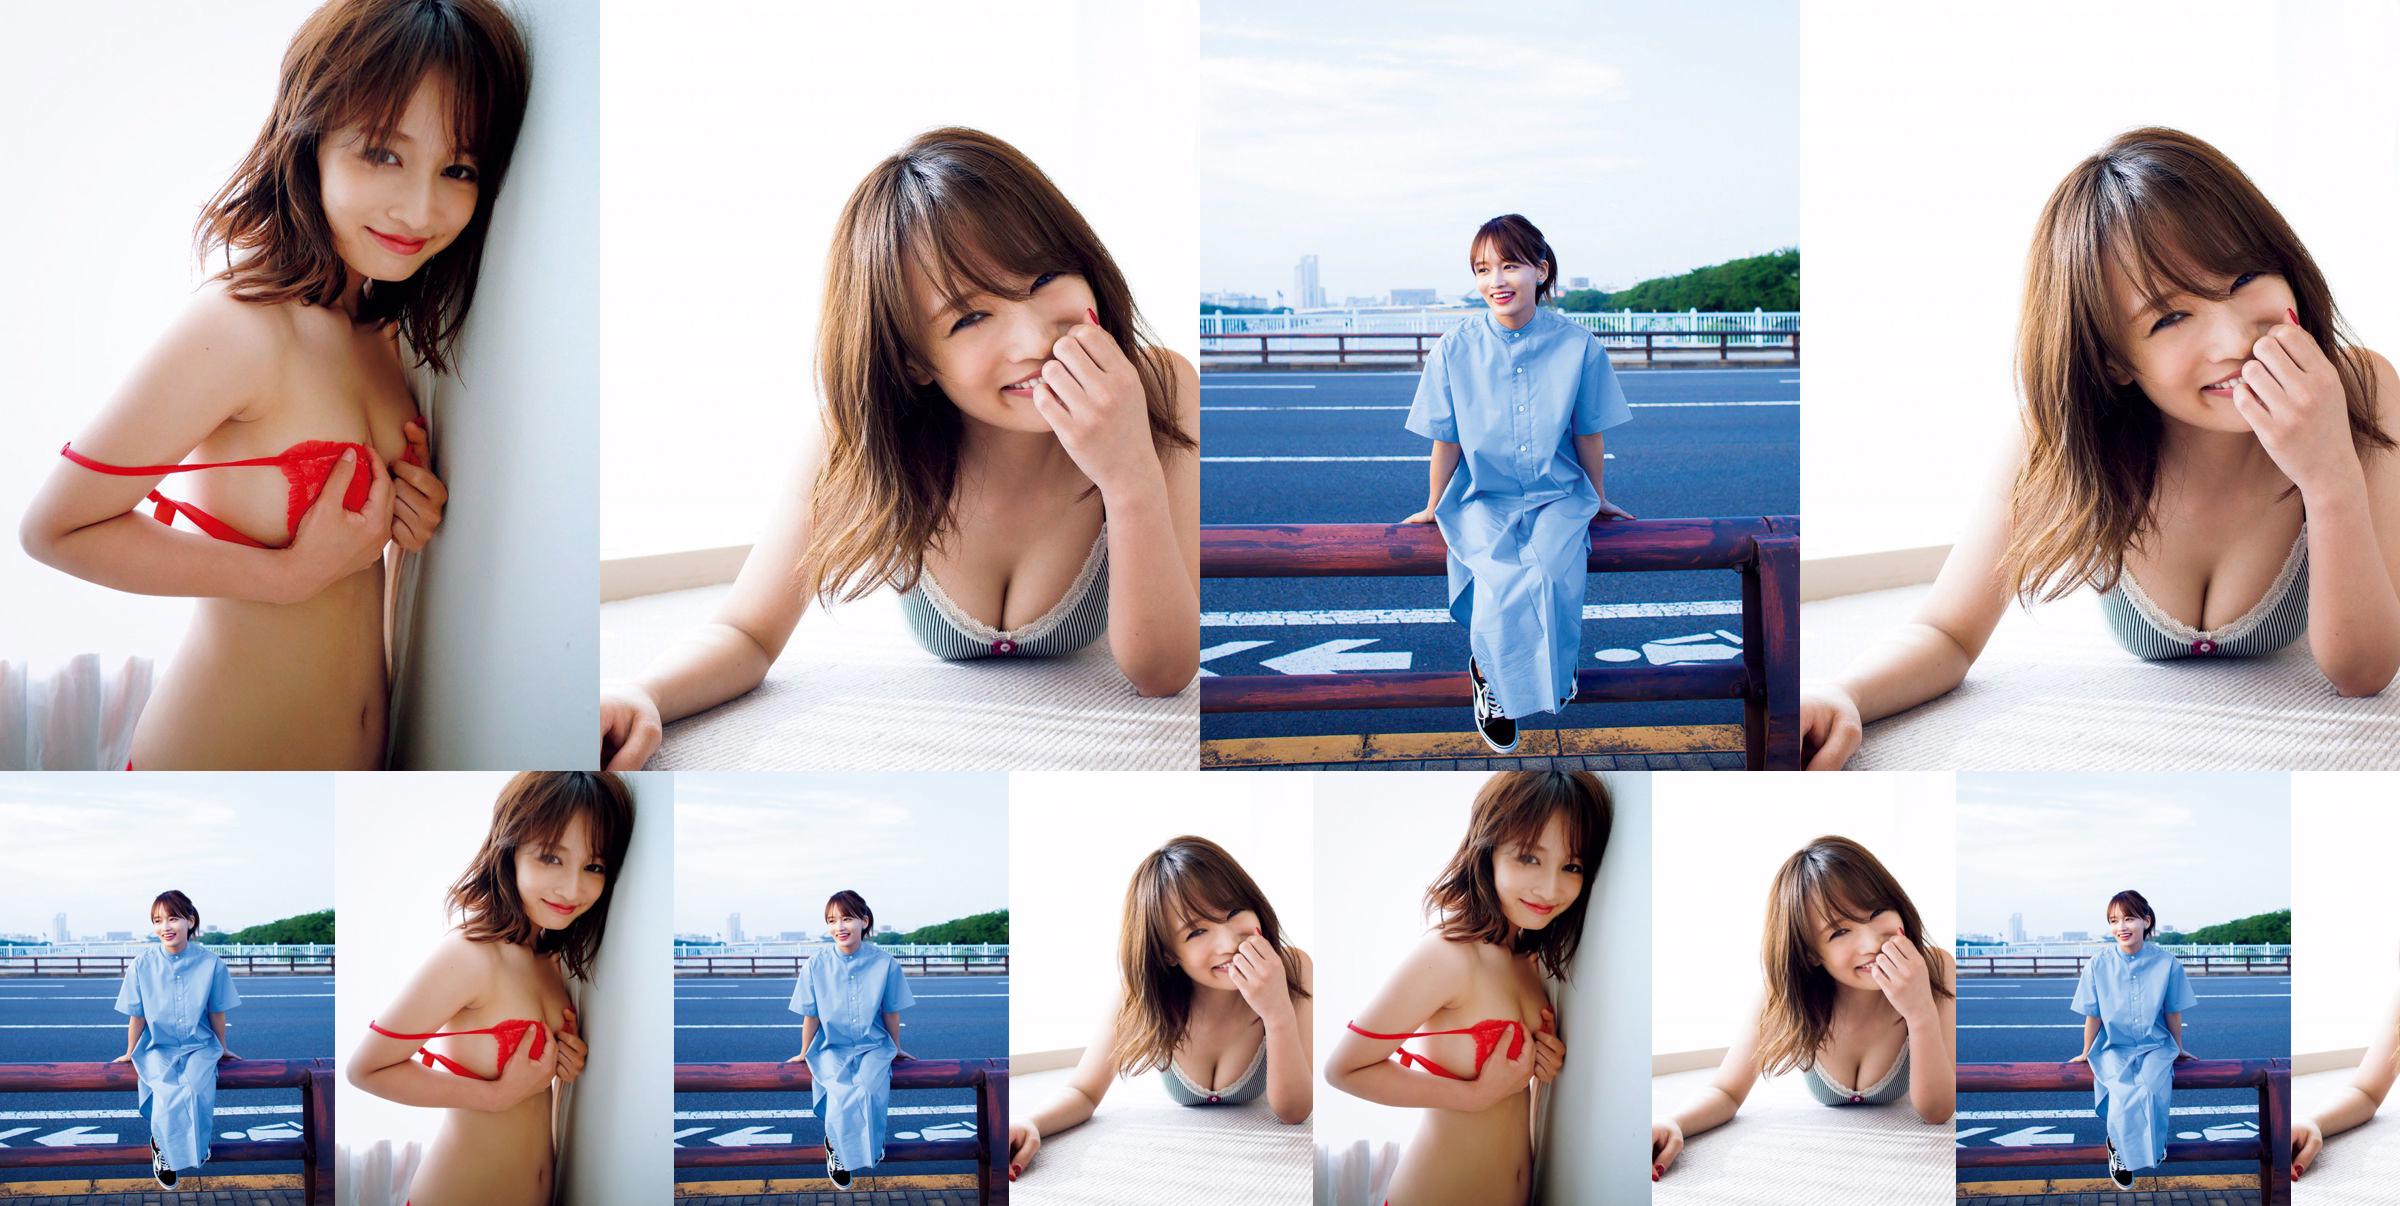 [VIERNES] Mai Watanabe "Copa F con un cuerpo delgado" foto No.ddd295 Página 3